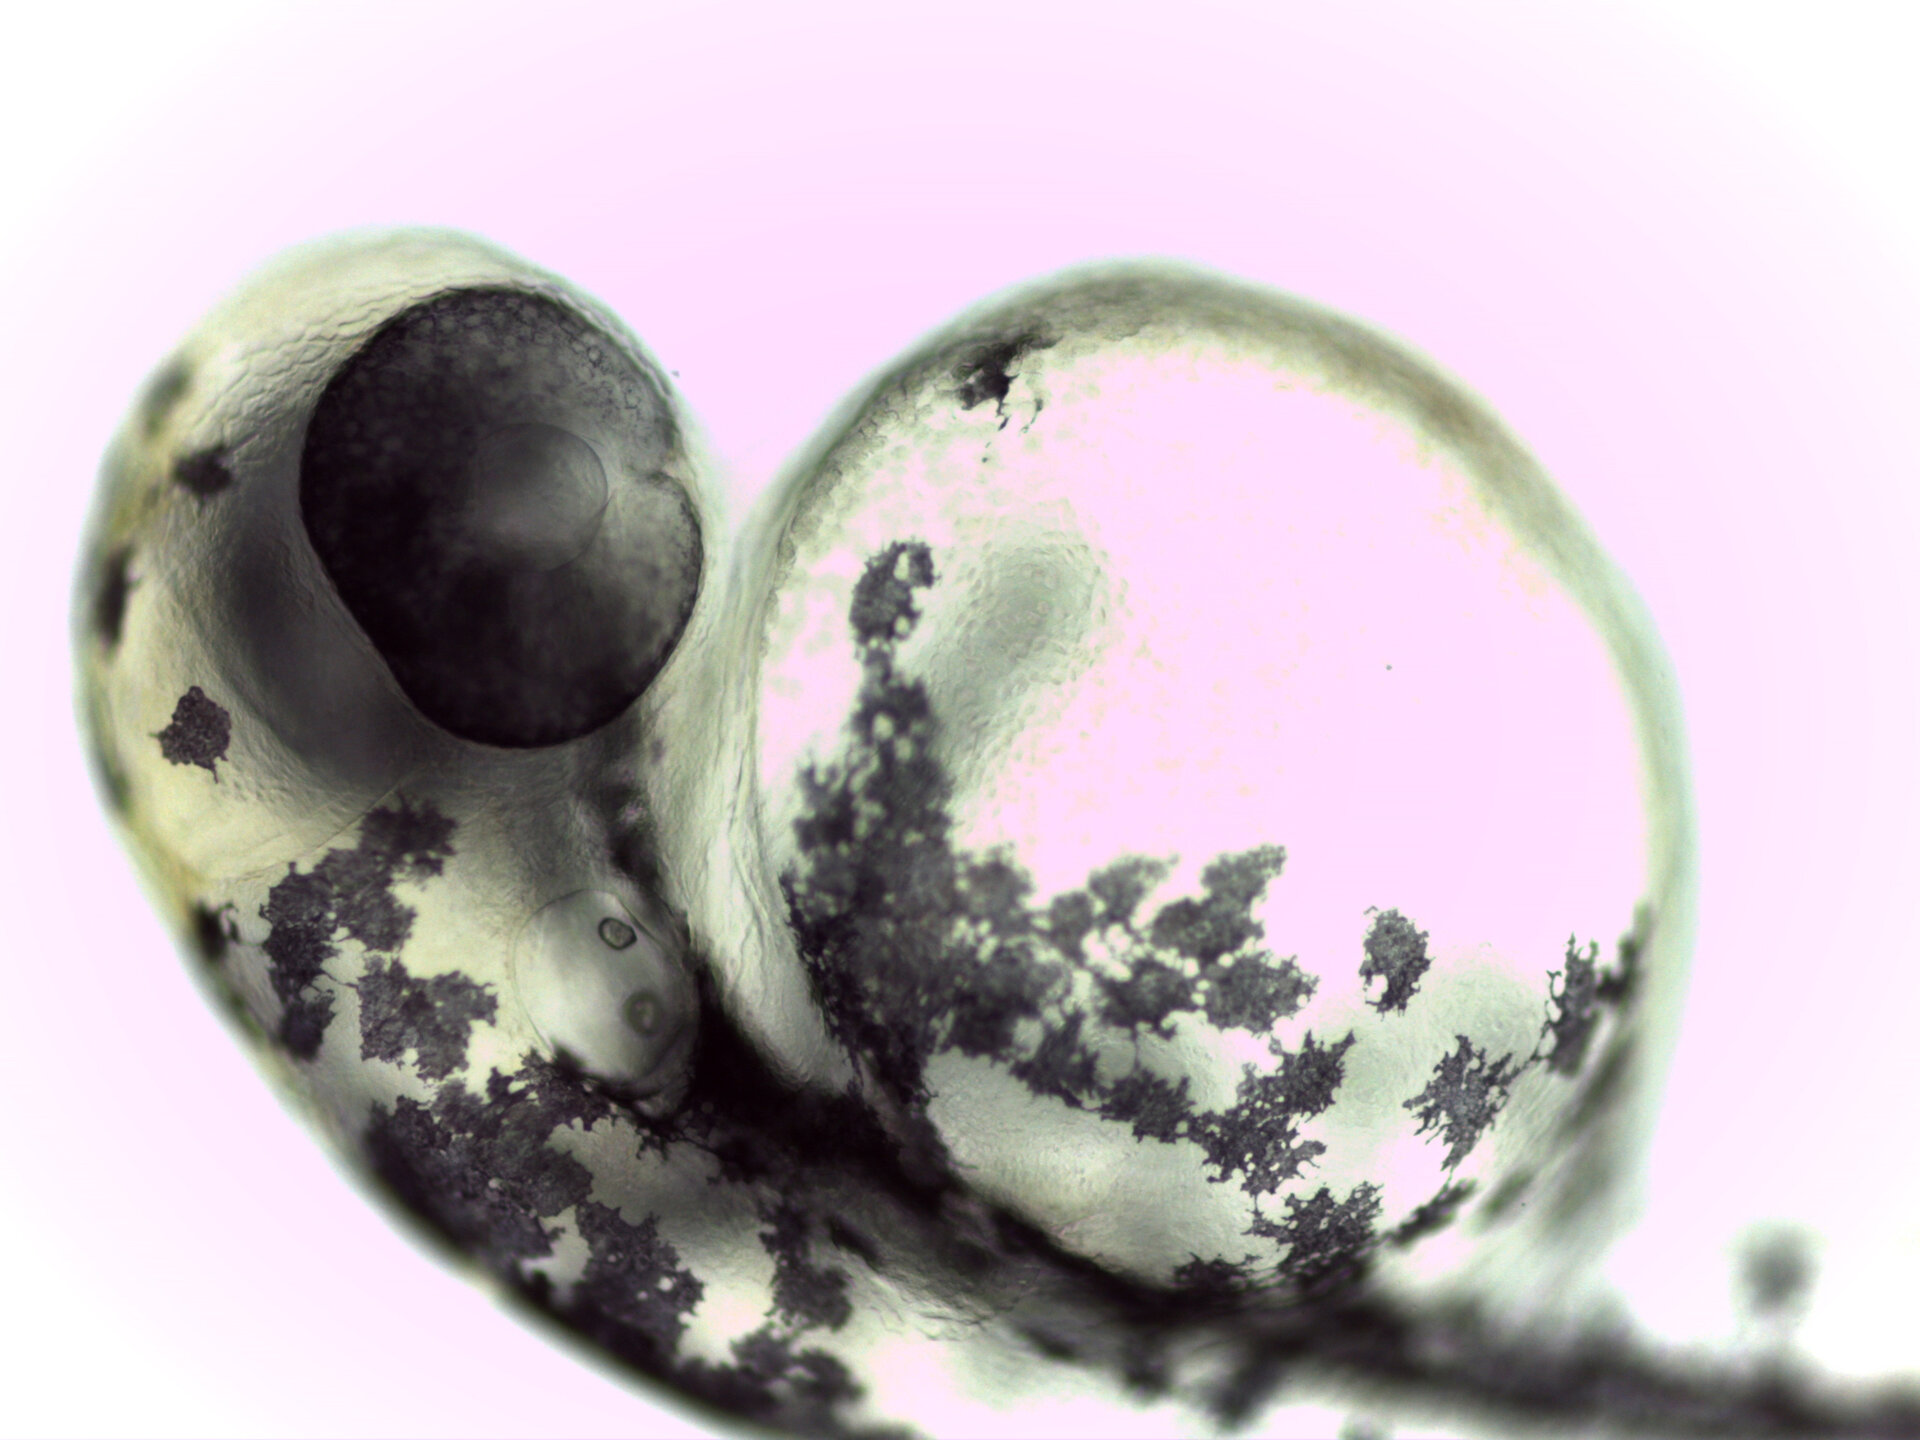 Zebrafish embryo